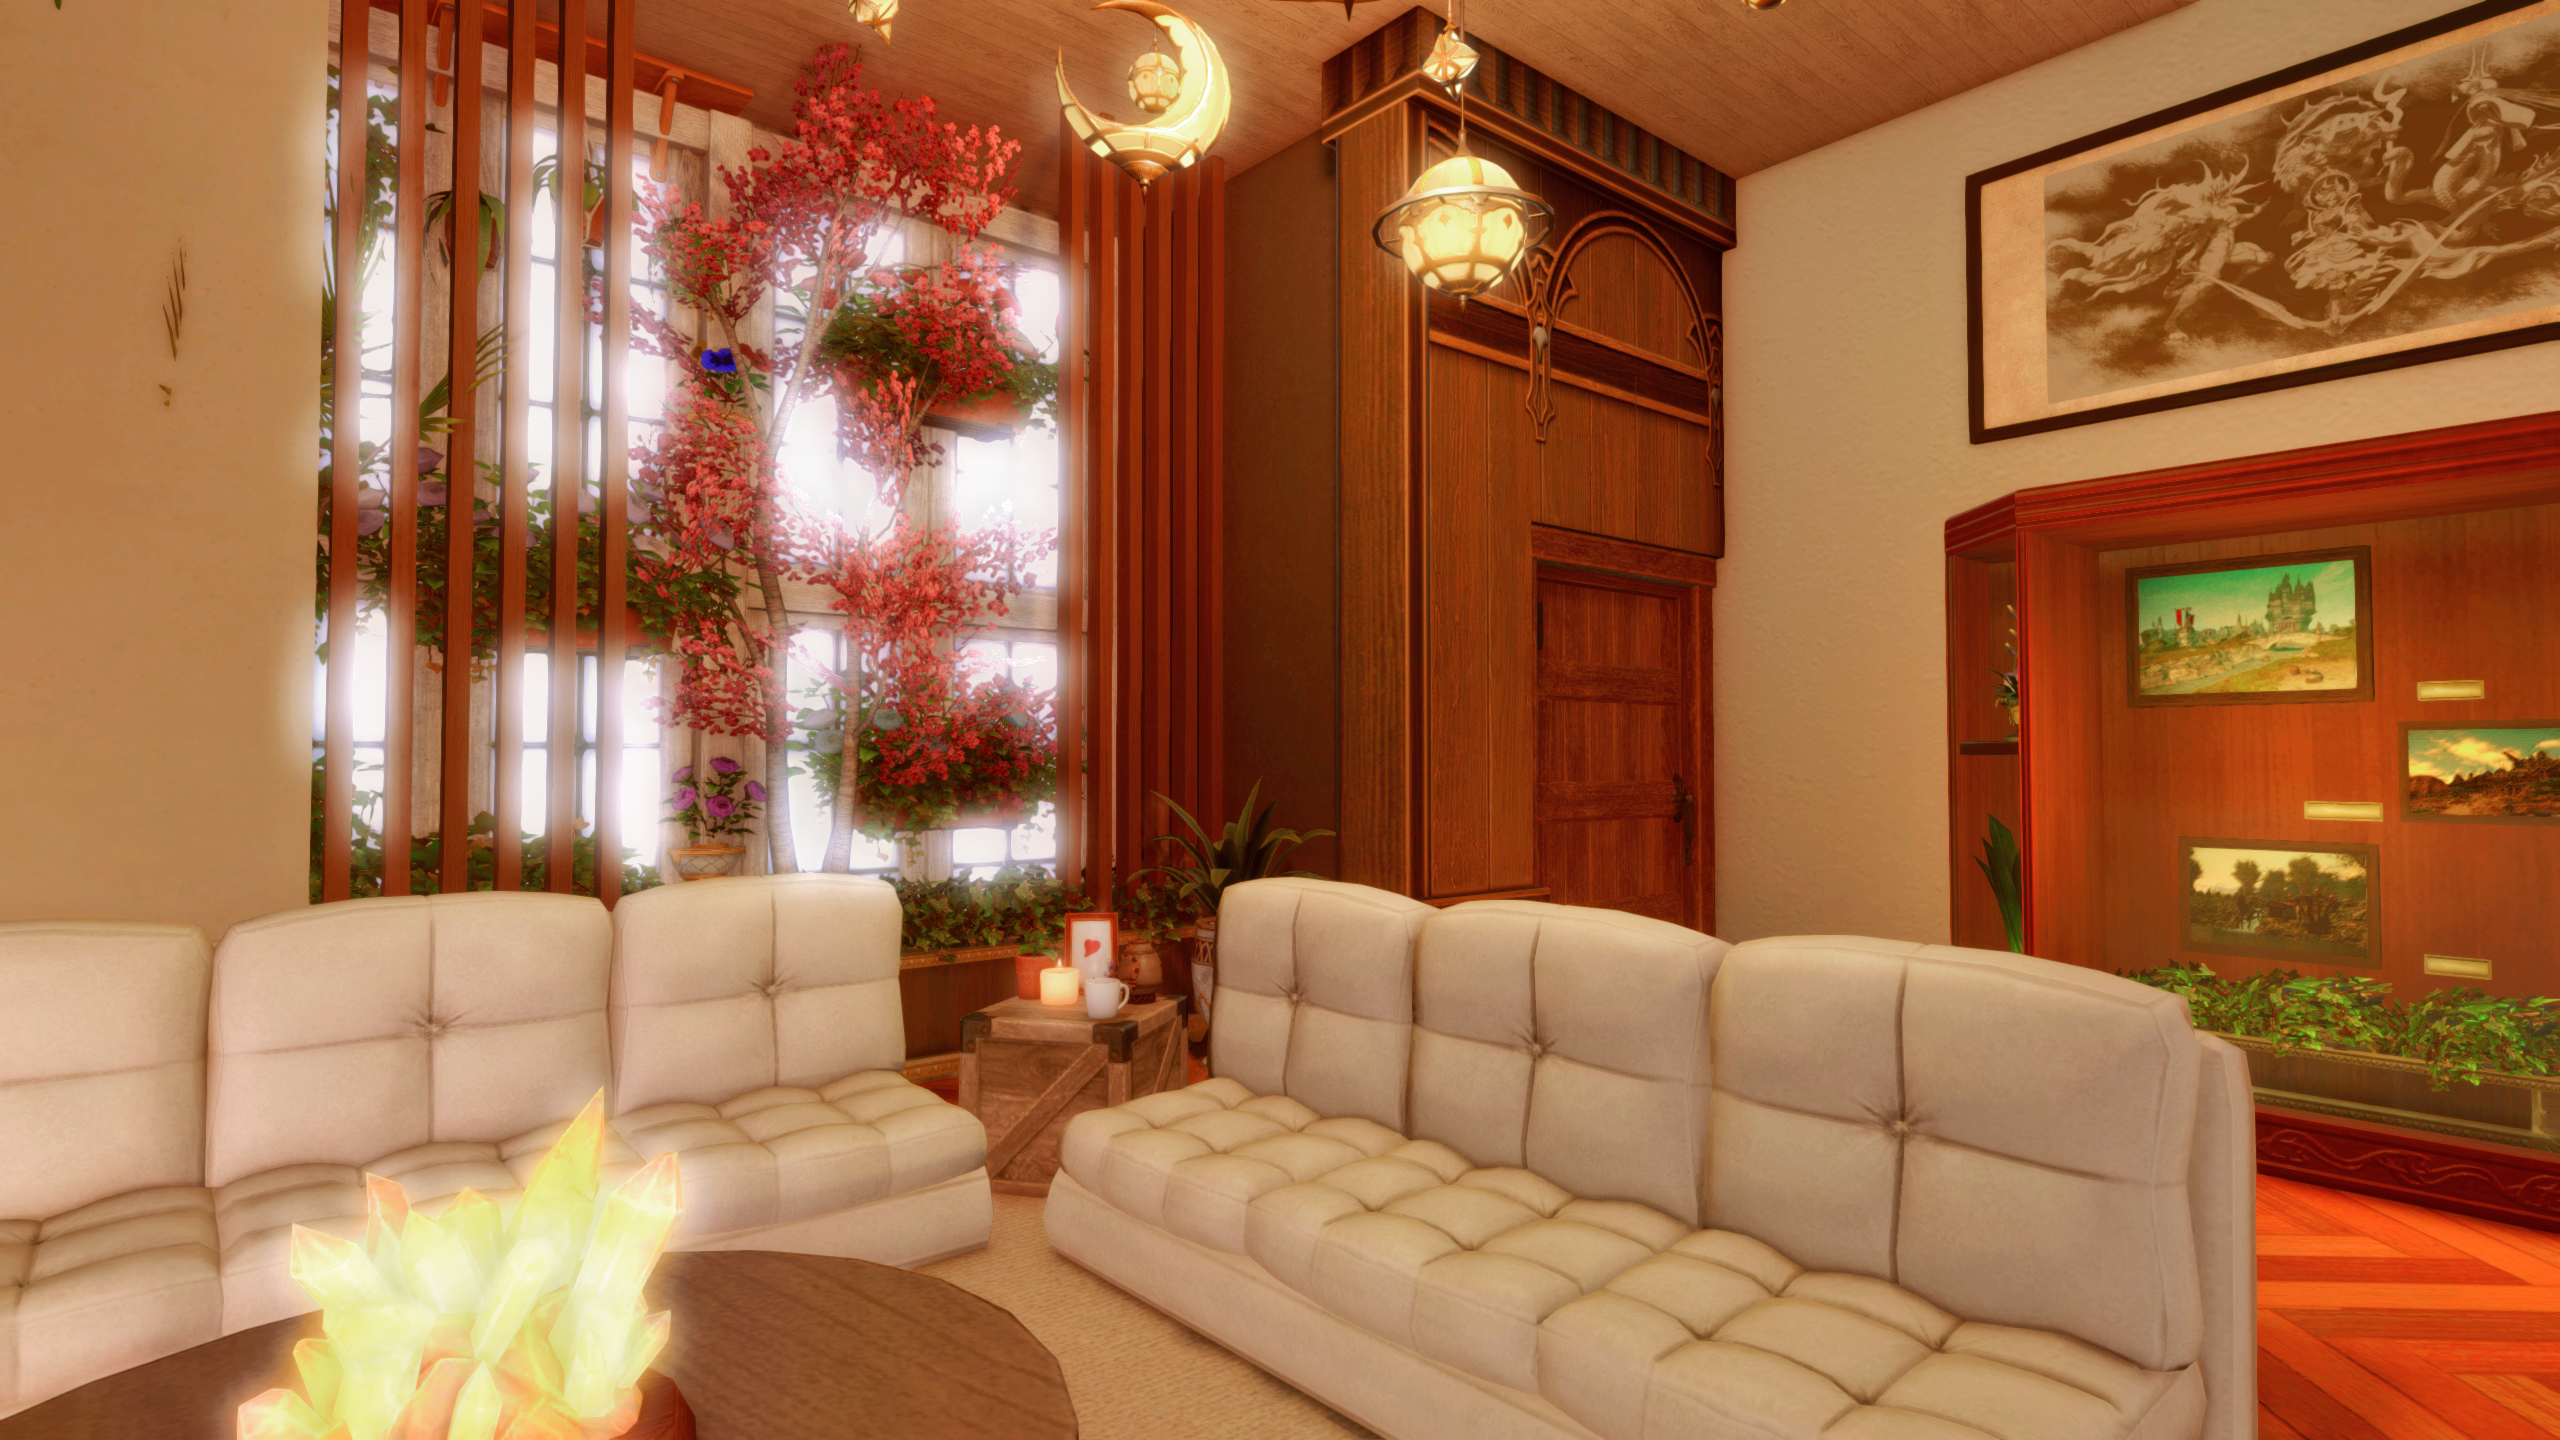 Logement Final Fantasy 14, espace de vie avec canapés, grandes fenêtres et beaucoup de plantes